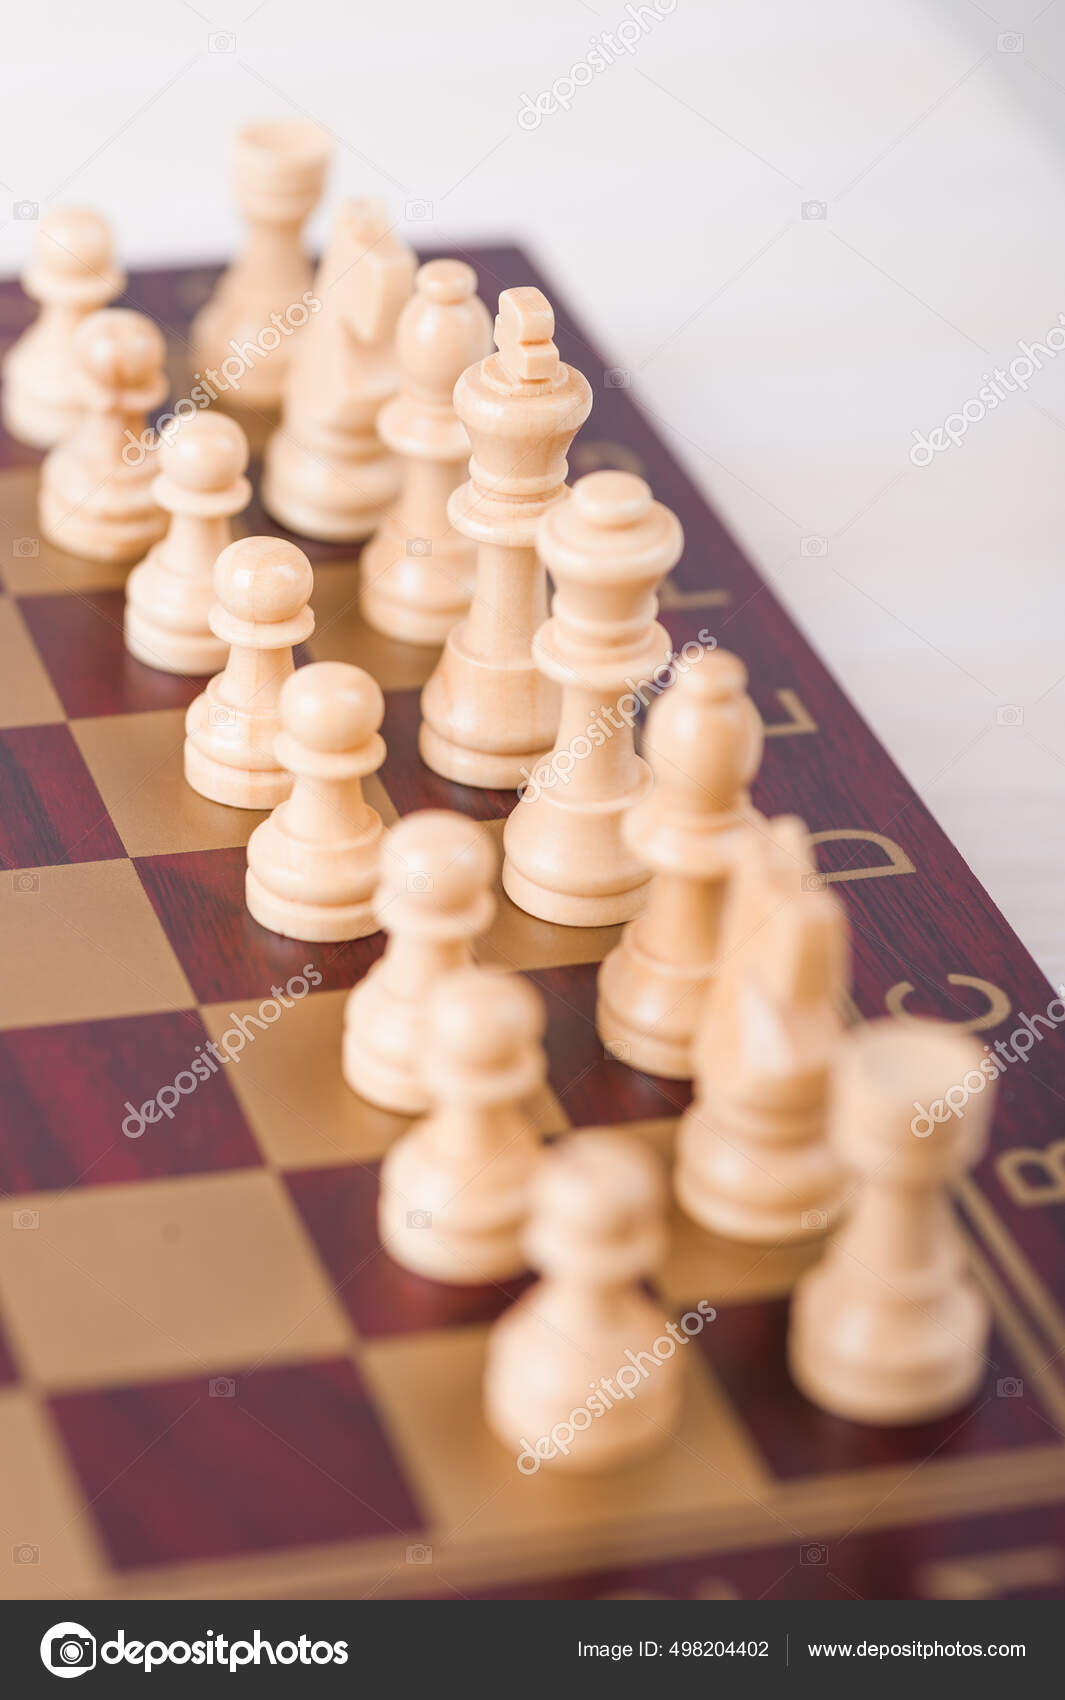 Jogo De Xadrez. Peças Brancas E Pretas No Tabuleiro De Xadrez. Foto de  Stock - Imagem de figuras, aprendizagem: 221923738